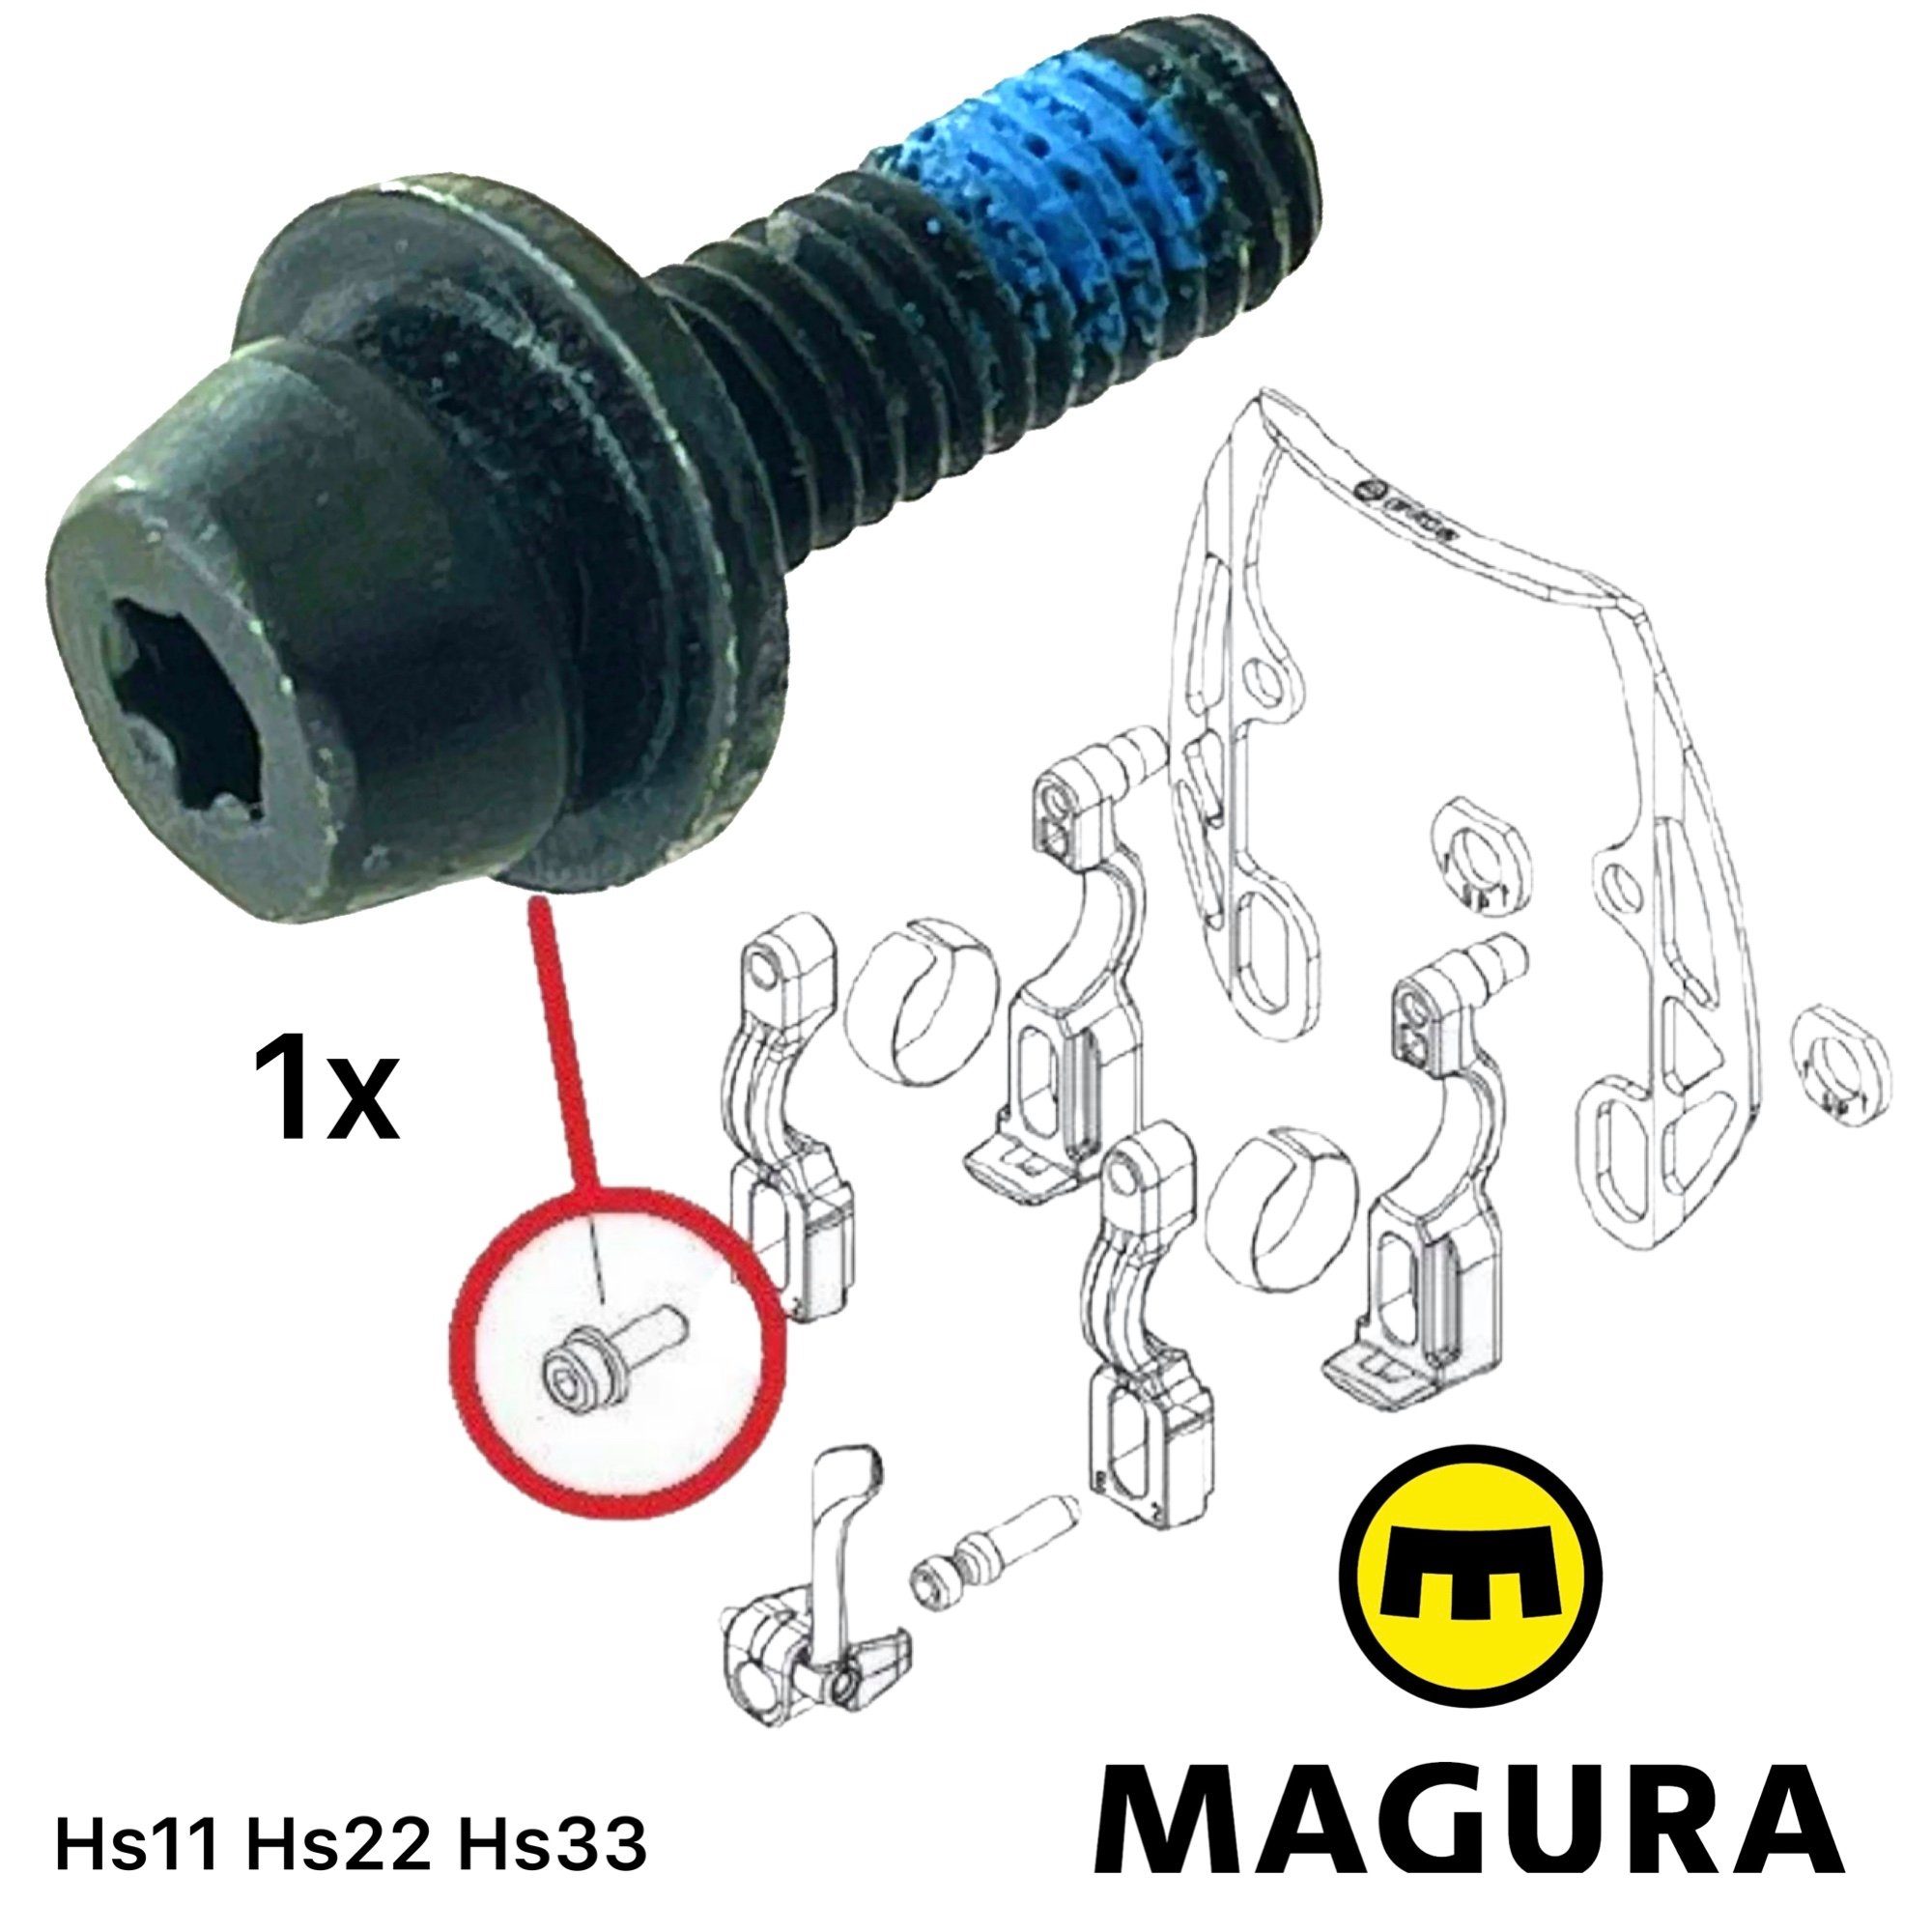 M6 Magura (0720934) T25 Bremszylinder für Torx Magura Befestigungsschraube Felgenbremse 1x